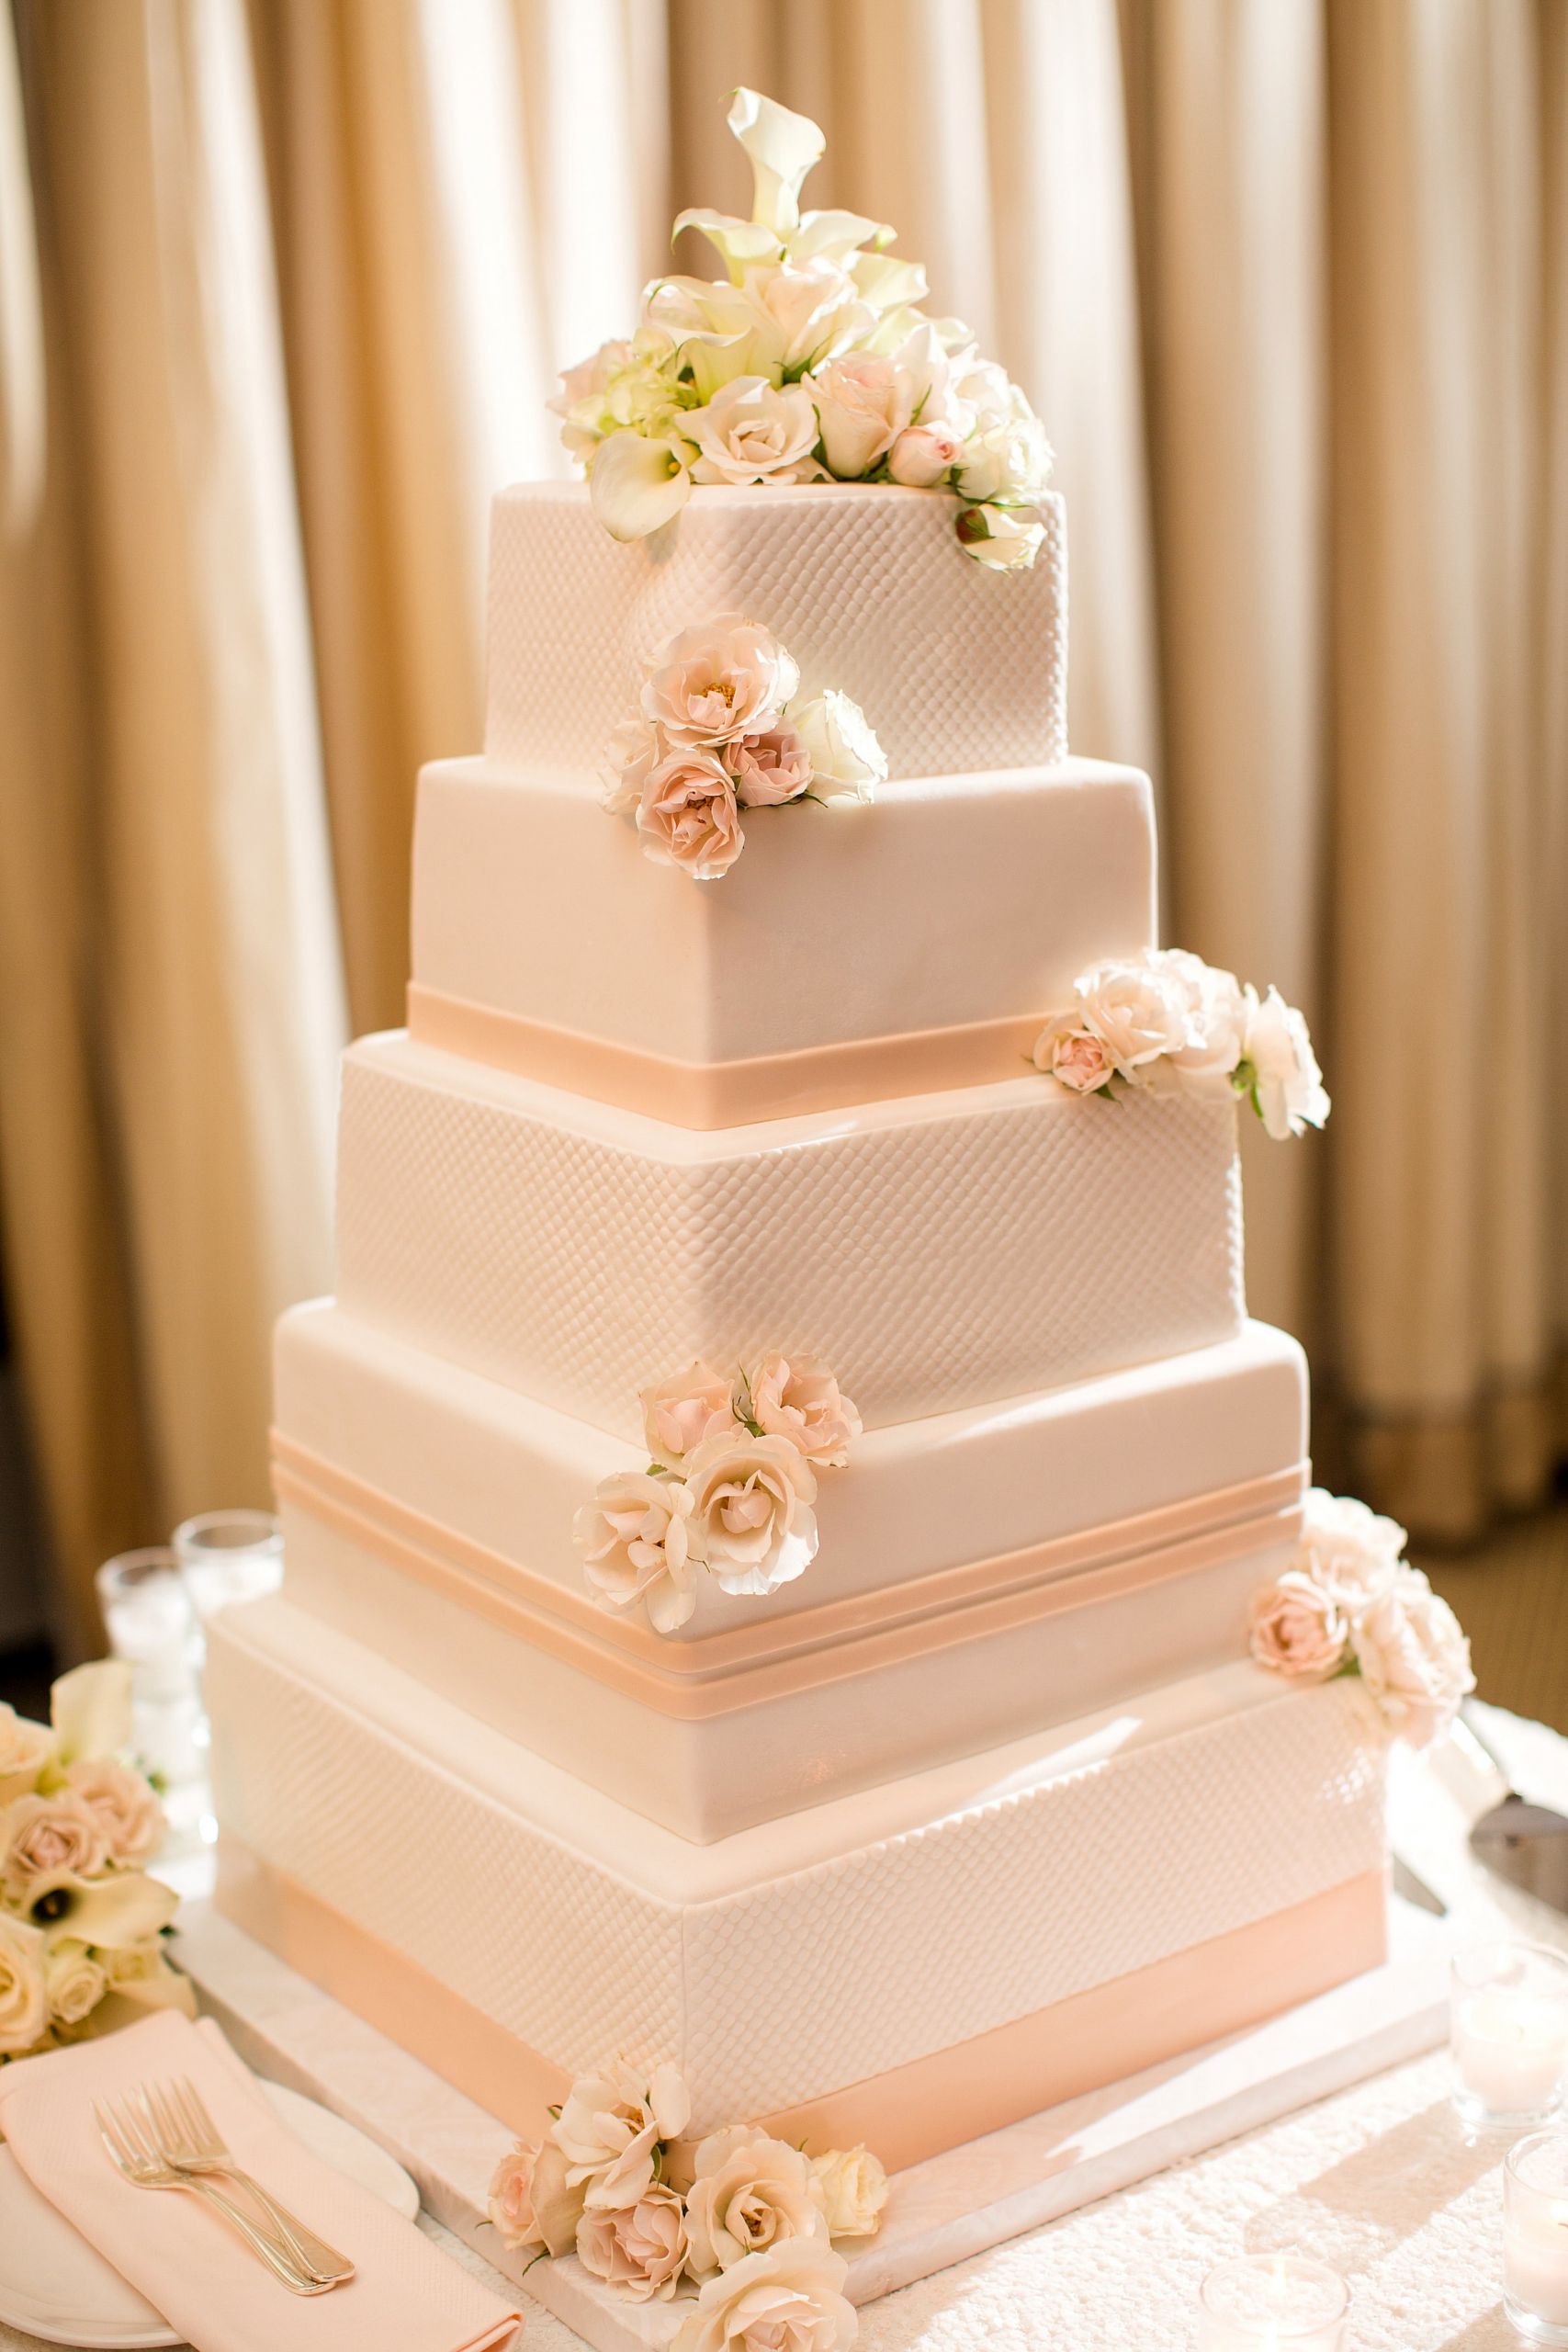 Wedding Cakes Images
 Vanilla Bake Shop Wedding Cakes